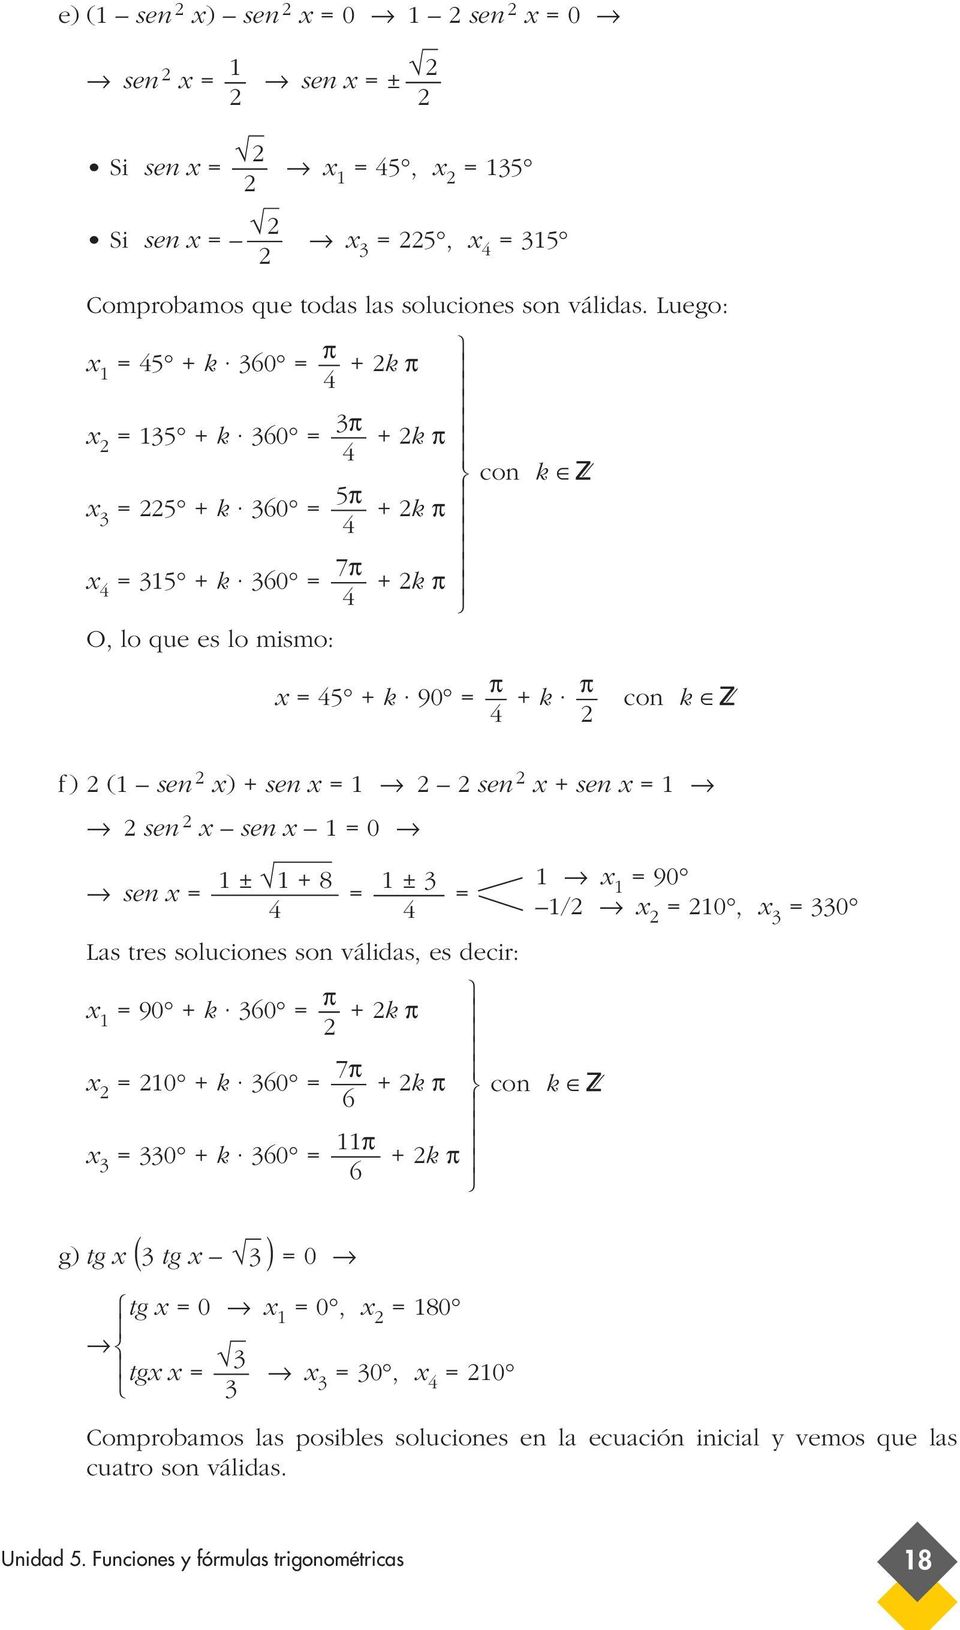 sen x 0 ± + 8 ± sen x Las tres soluciones son válidas, es decir: x 90 + k 0 x 0 + k 0 x 0 + k 0 7 + k + k + k x 90 / x 0, x 0 g) tg x ( tg x ) 0 tg